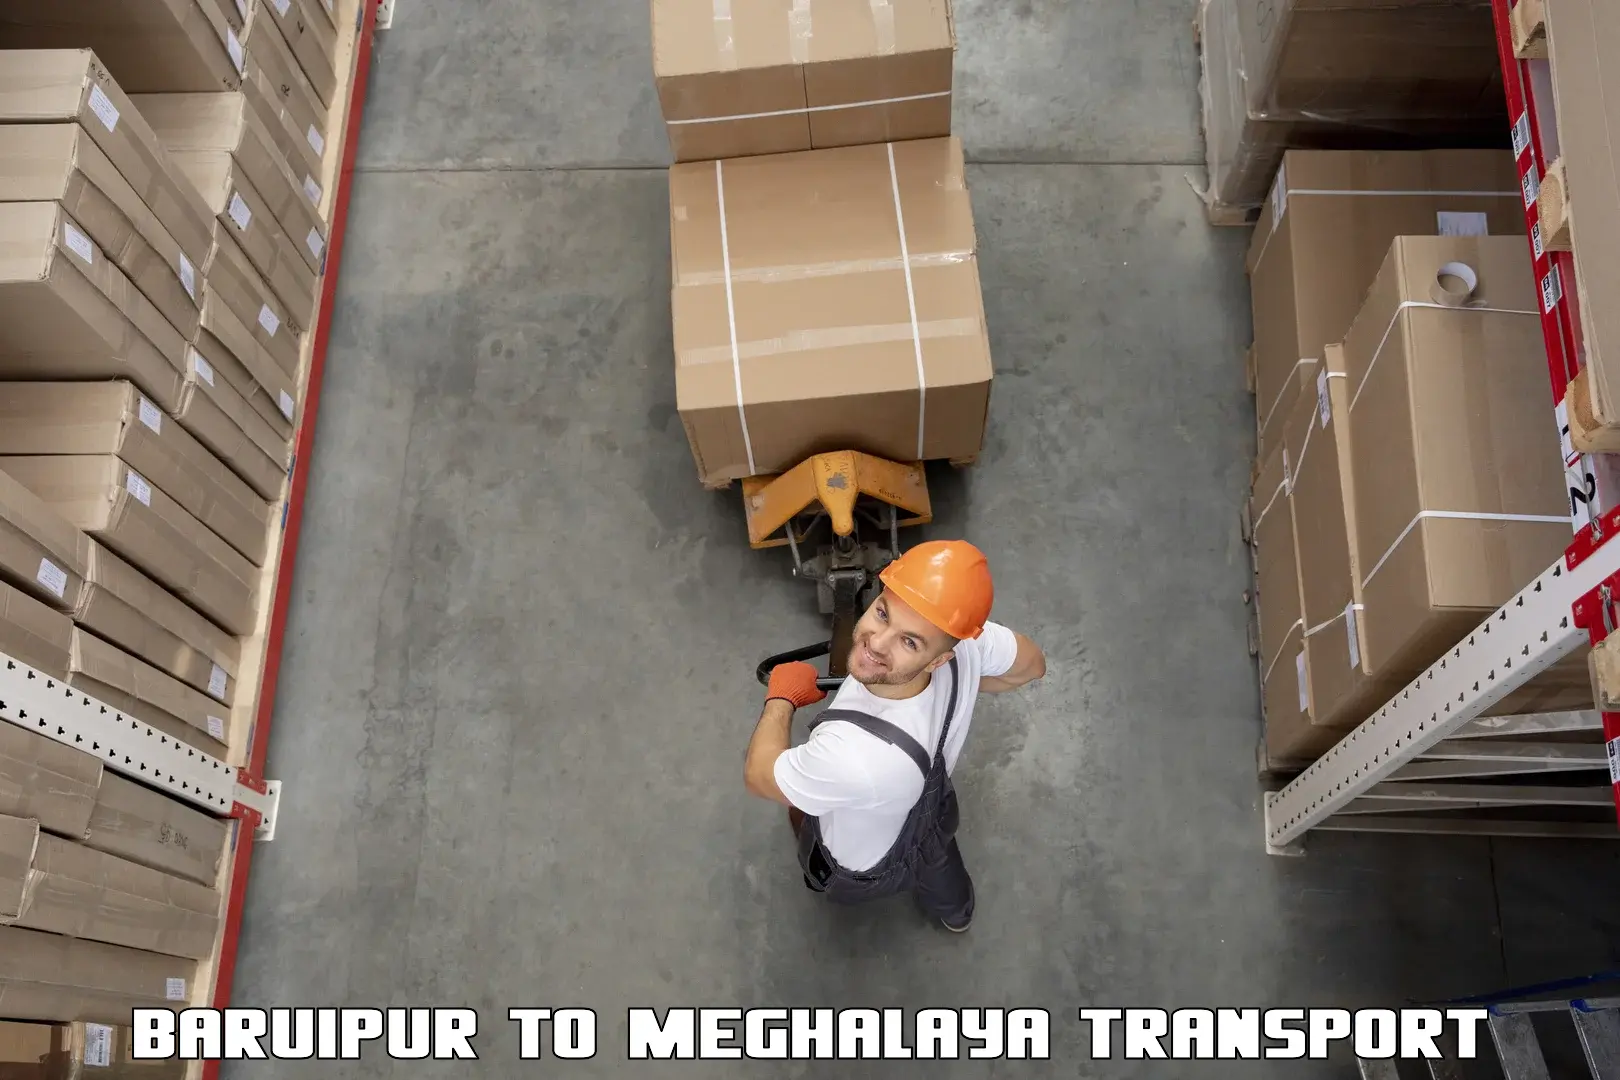 Furniture transport service Baruipur to Meghalaya